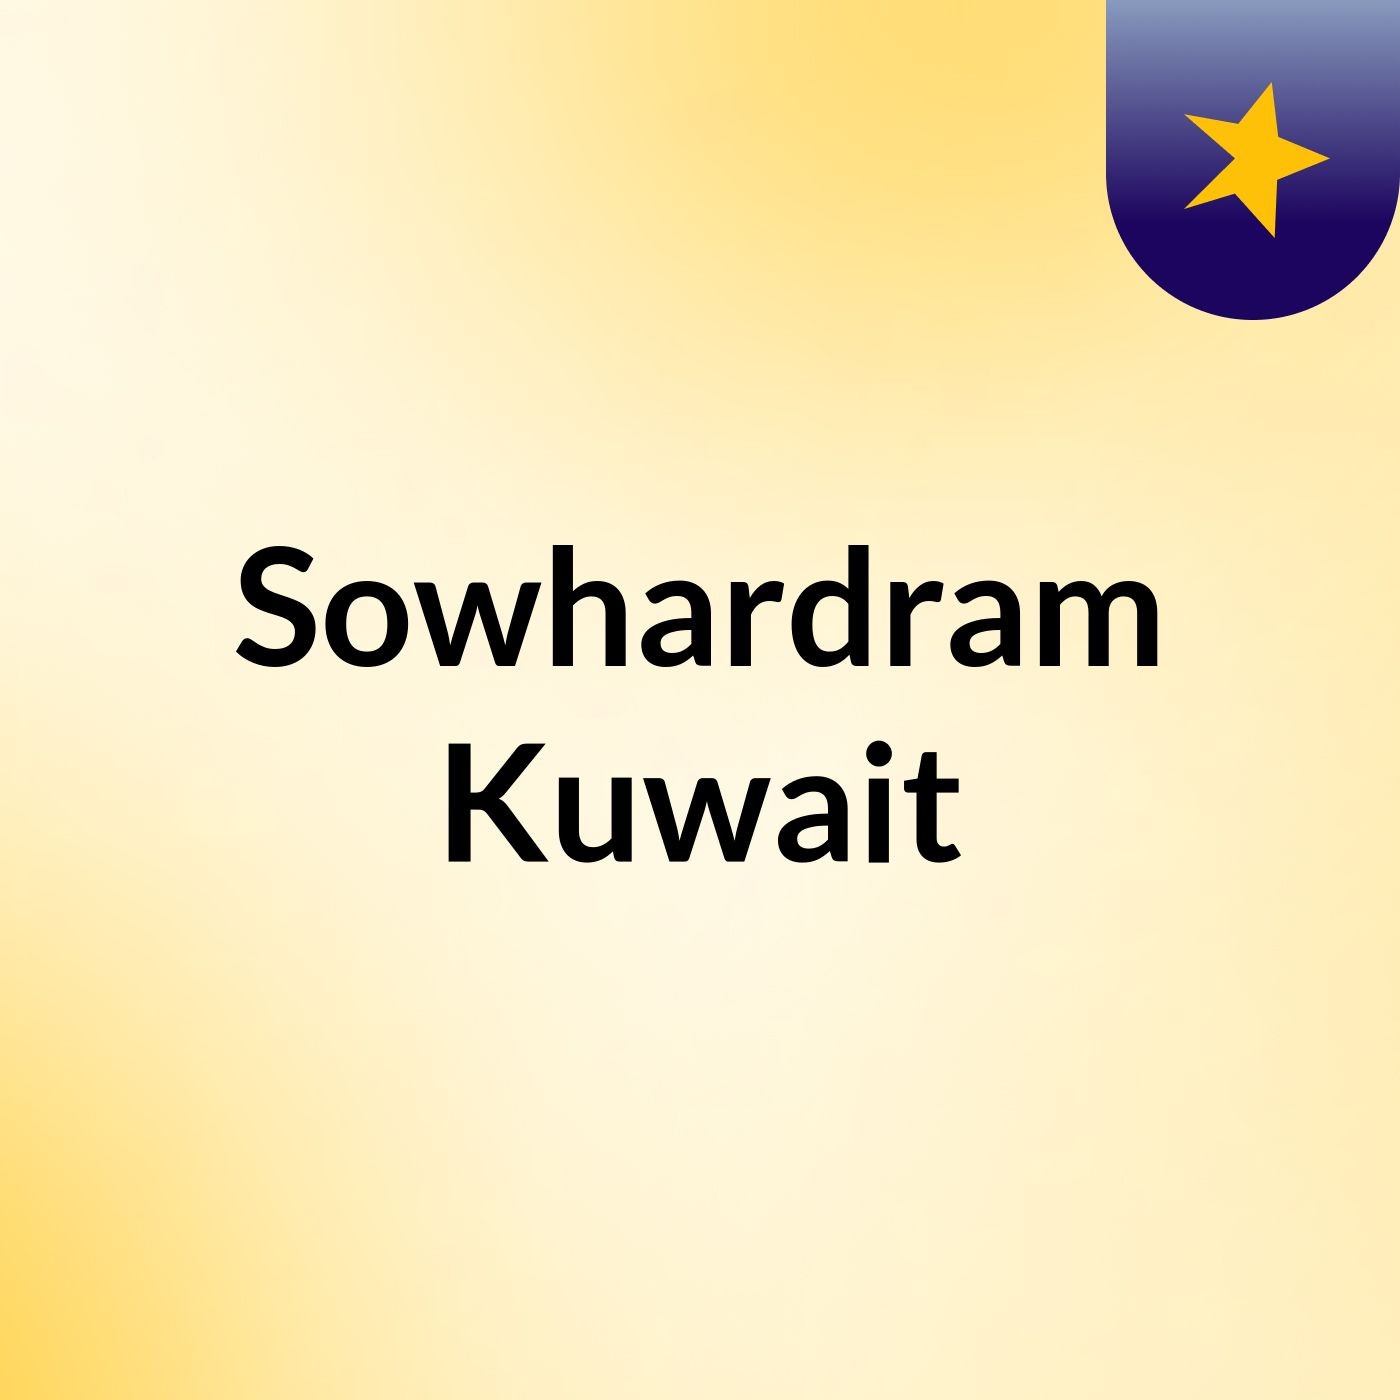 Sowhardram Kuwait